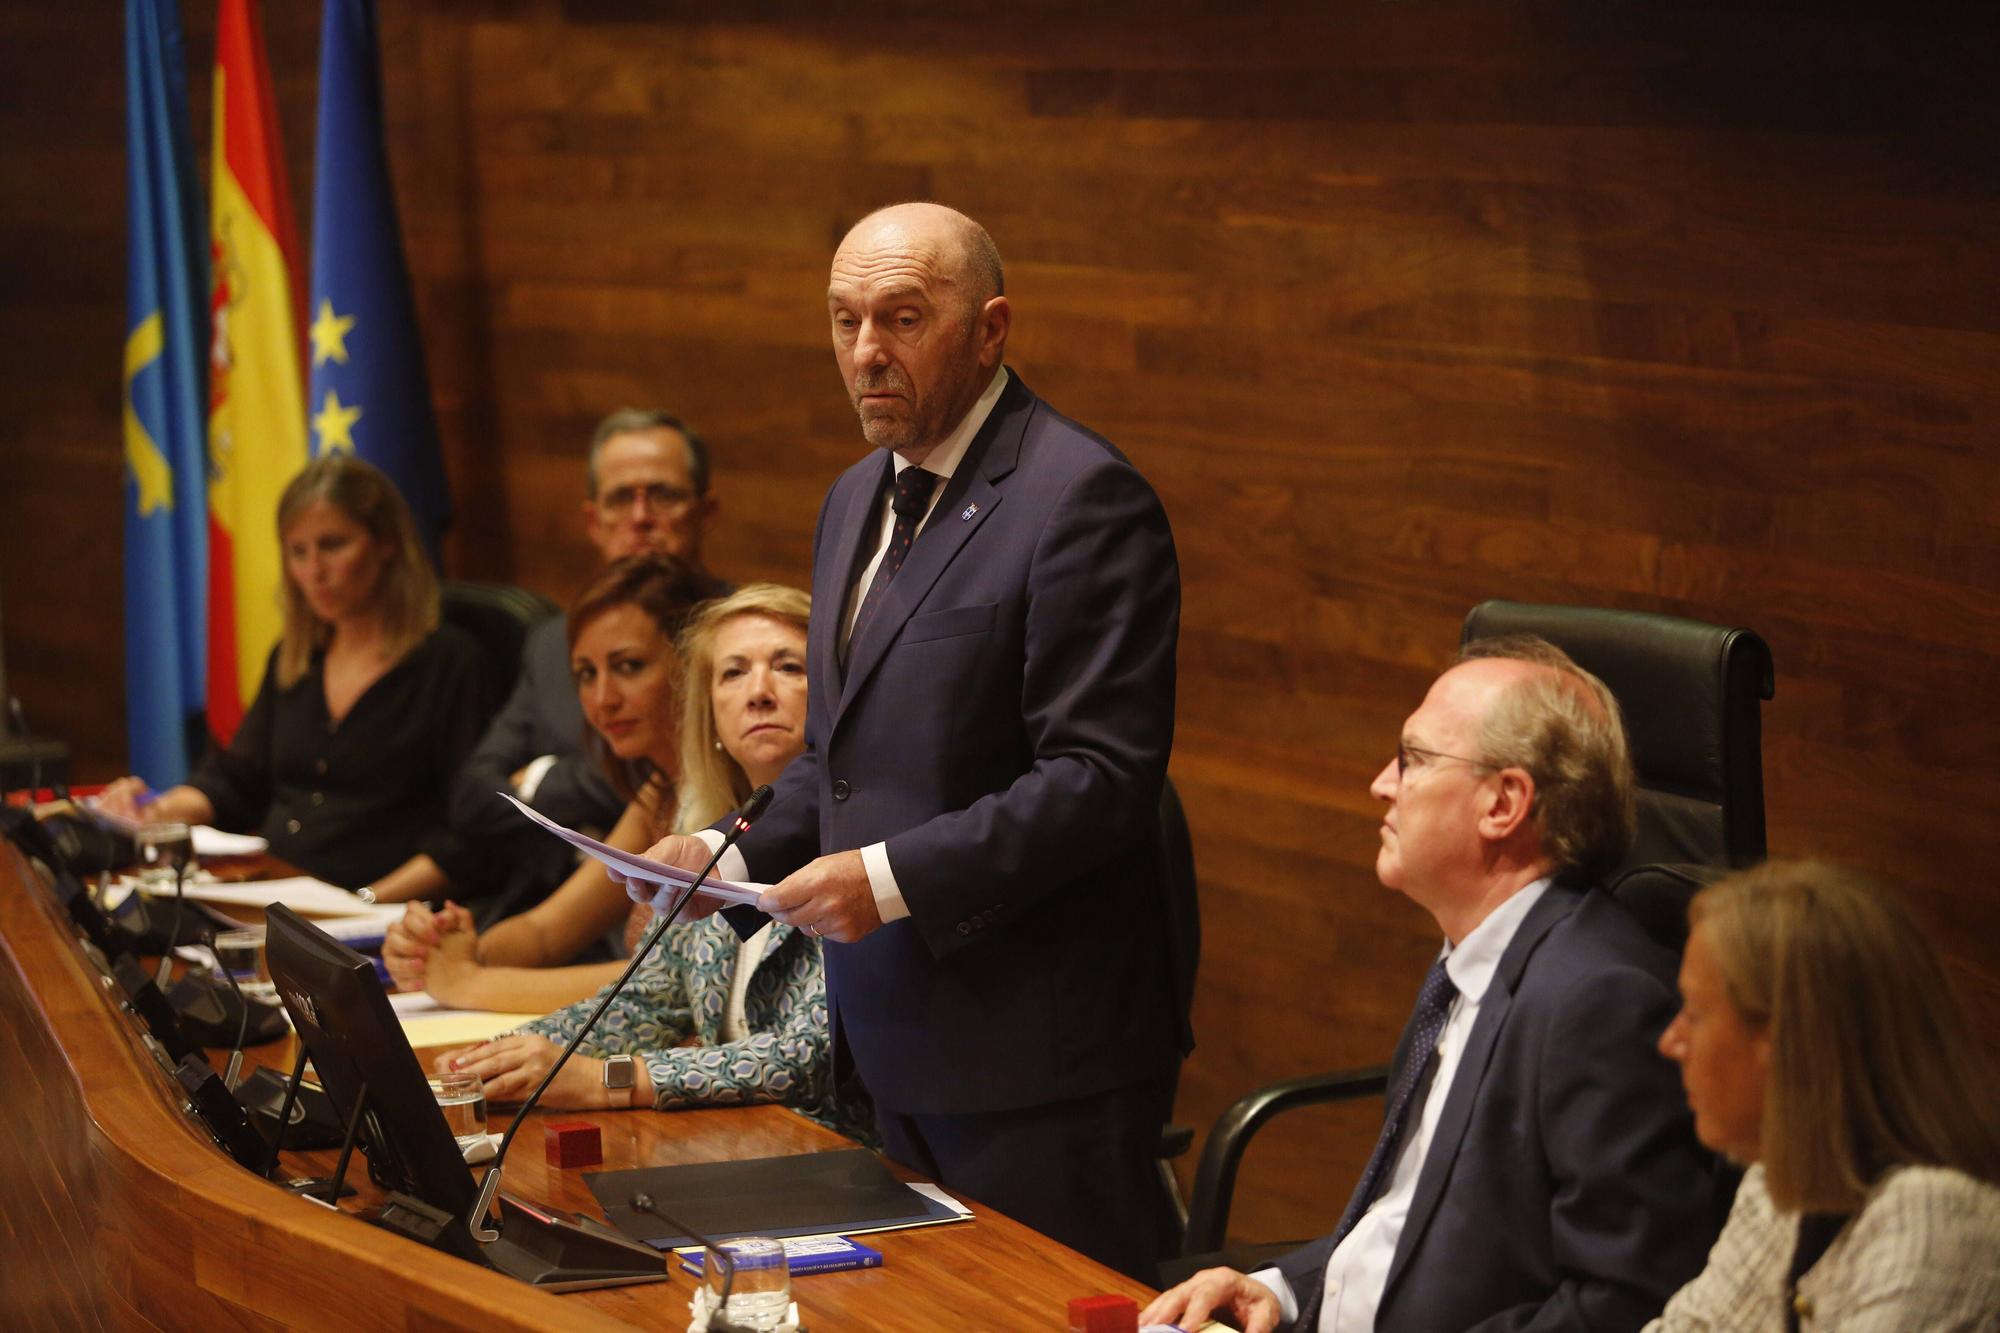 EN IMÁGENES: Sesión de constitución de la Junta General del Principado de Asturias